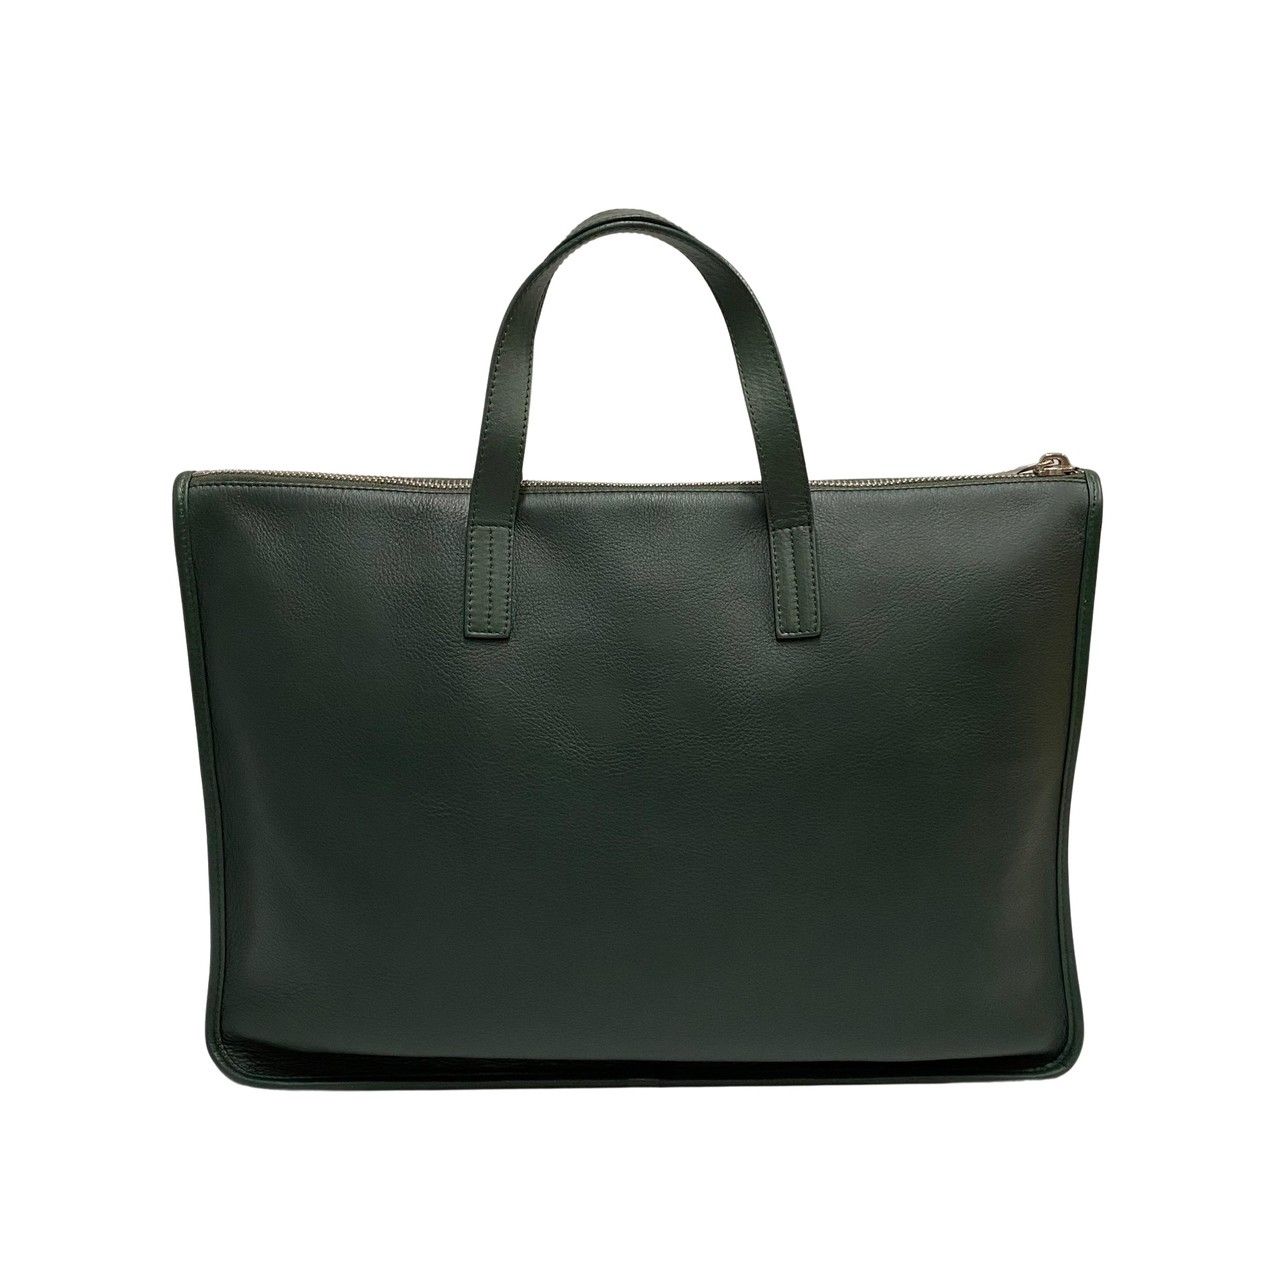 極 美品 保存袋付 LOEWE ロエベ アナグラム ロゴ ナッパレザー 本革 ハンドバッグ ビジネスバッグ A4収納可能 グリーン 緑 23655